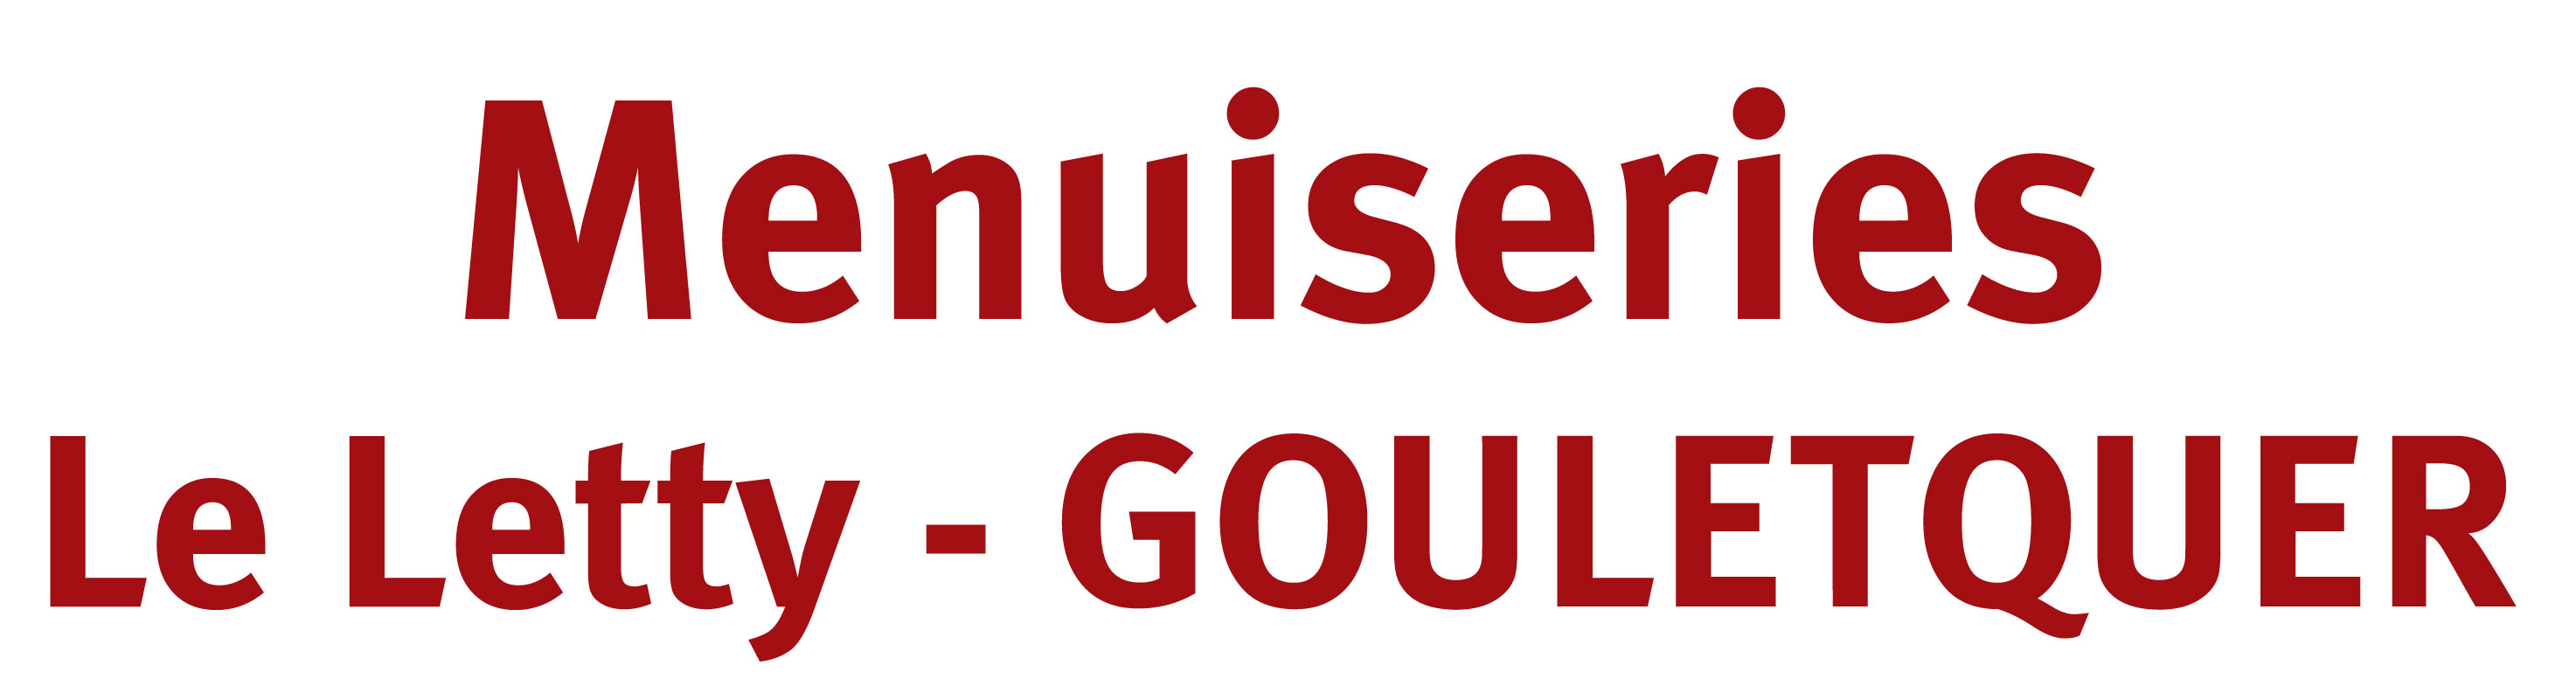 Menuiseries Le Letty - GOULETQUER